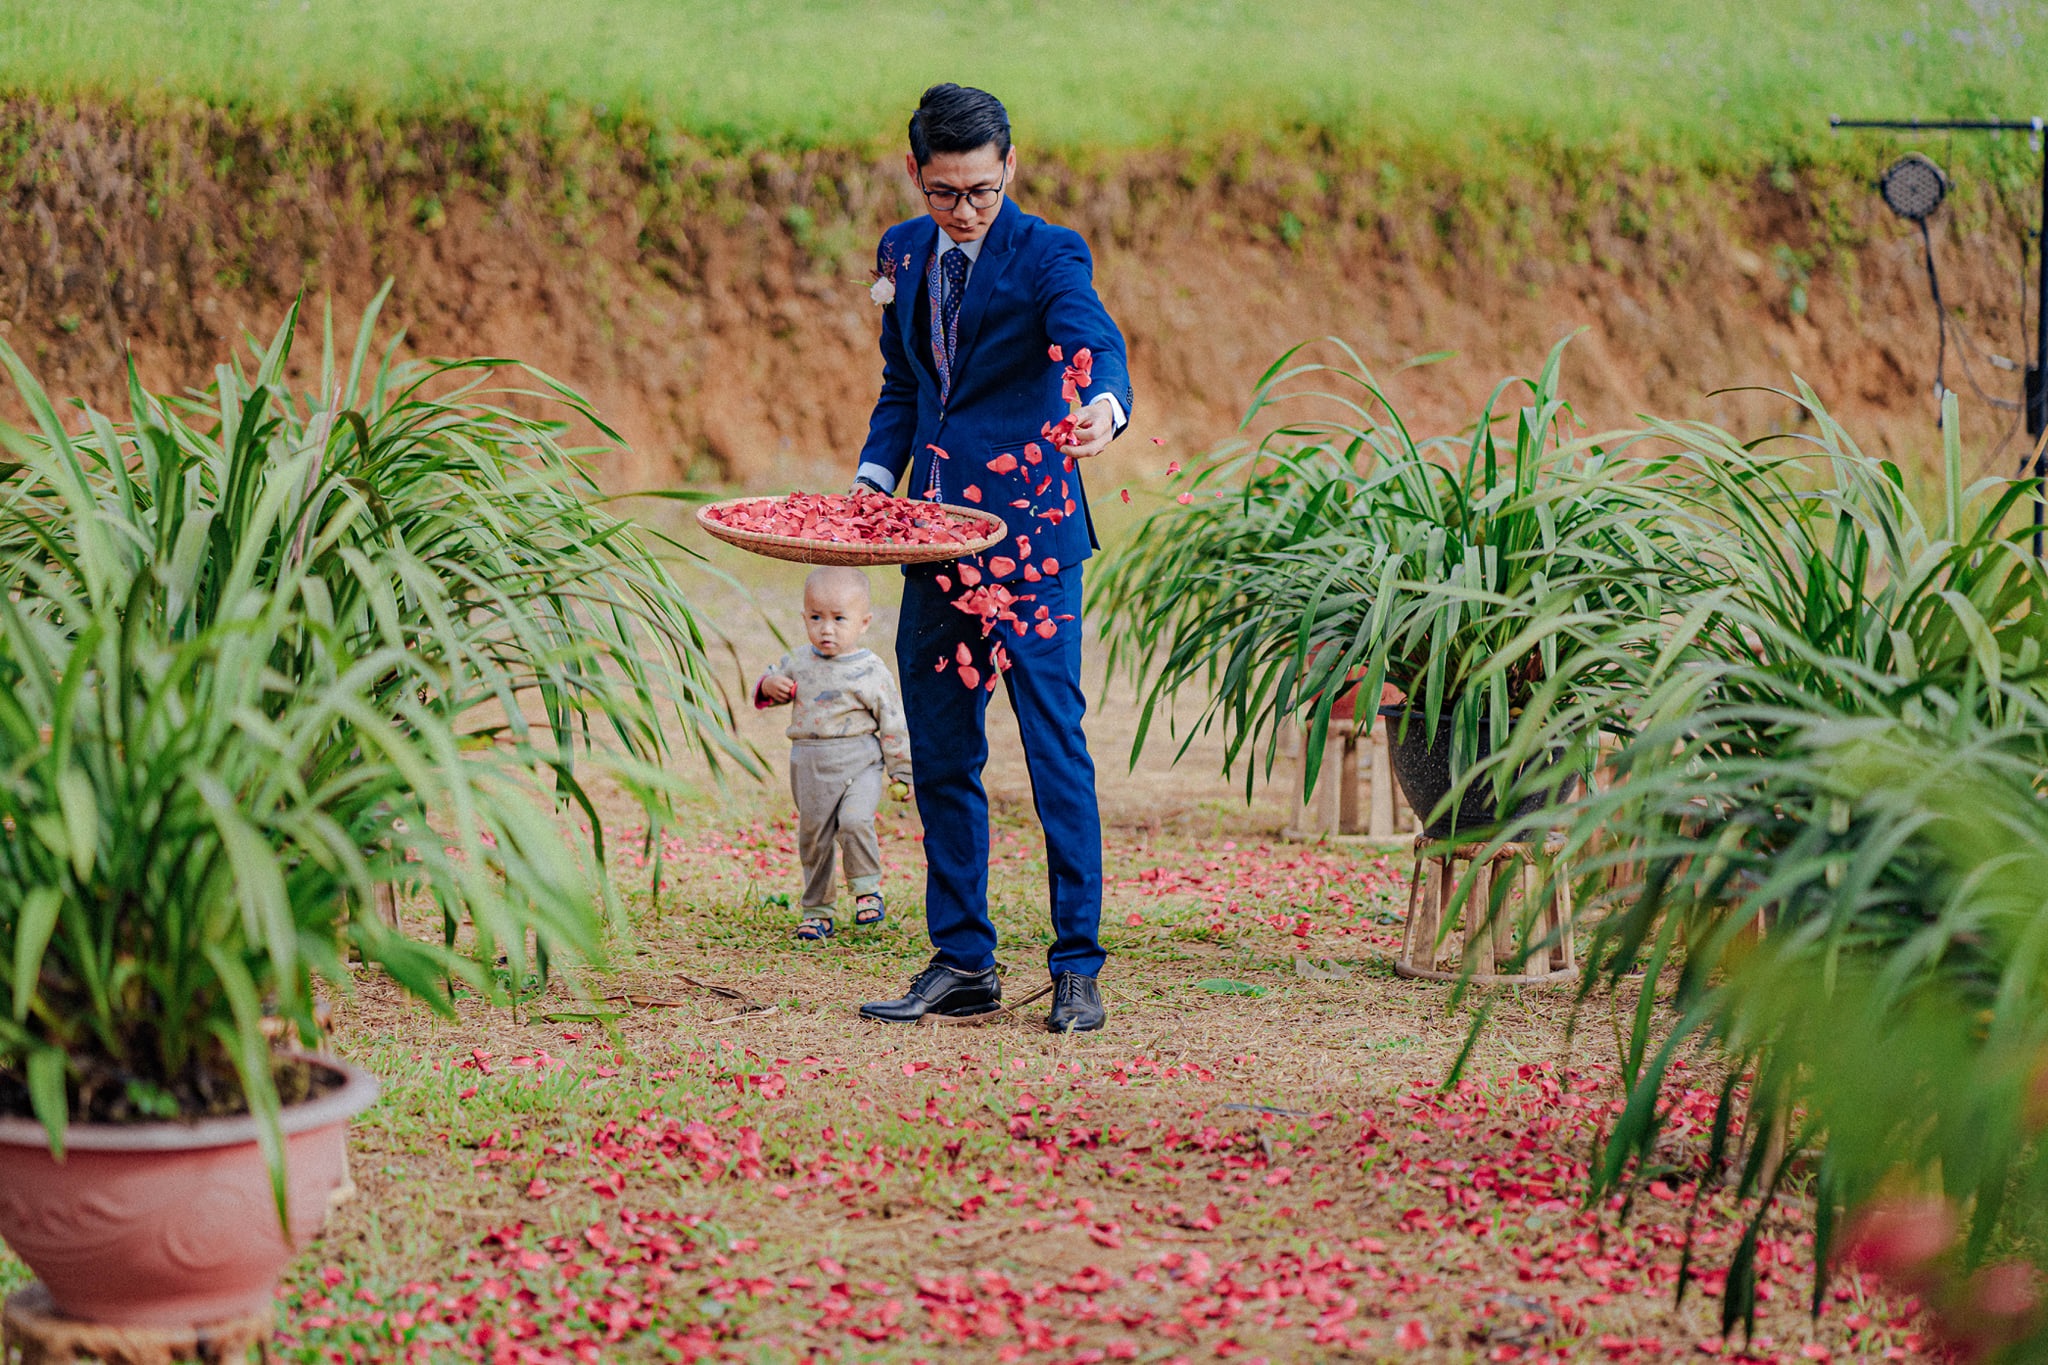 đám cưới dân tộc giản dị mà đẹp của cặp đôi chàng Sài Gòn nàng H Mông